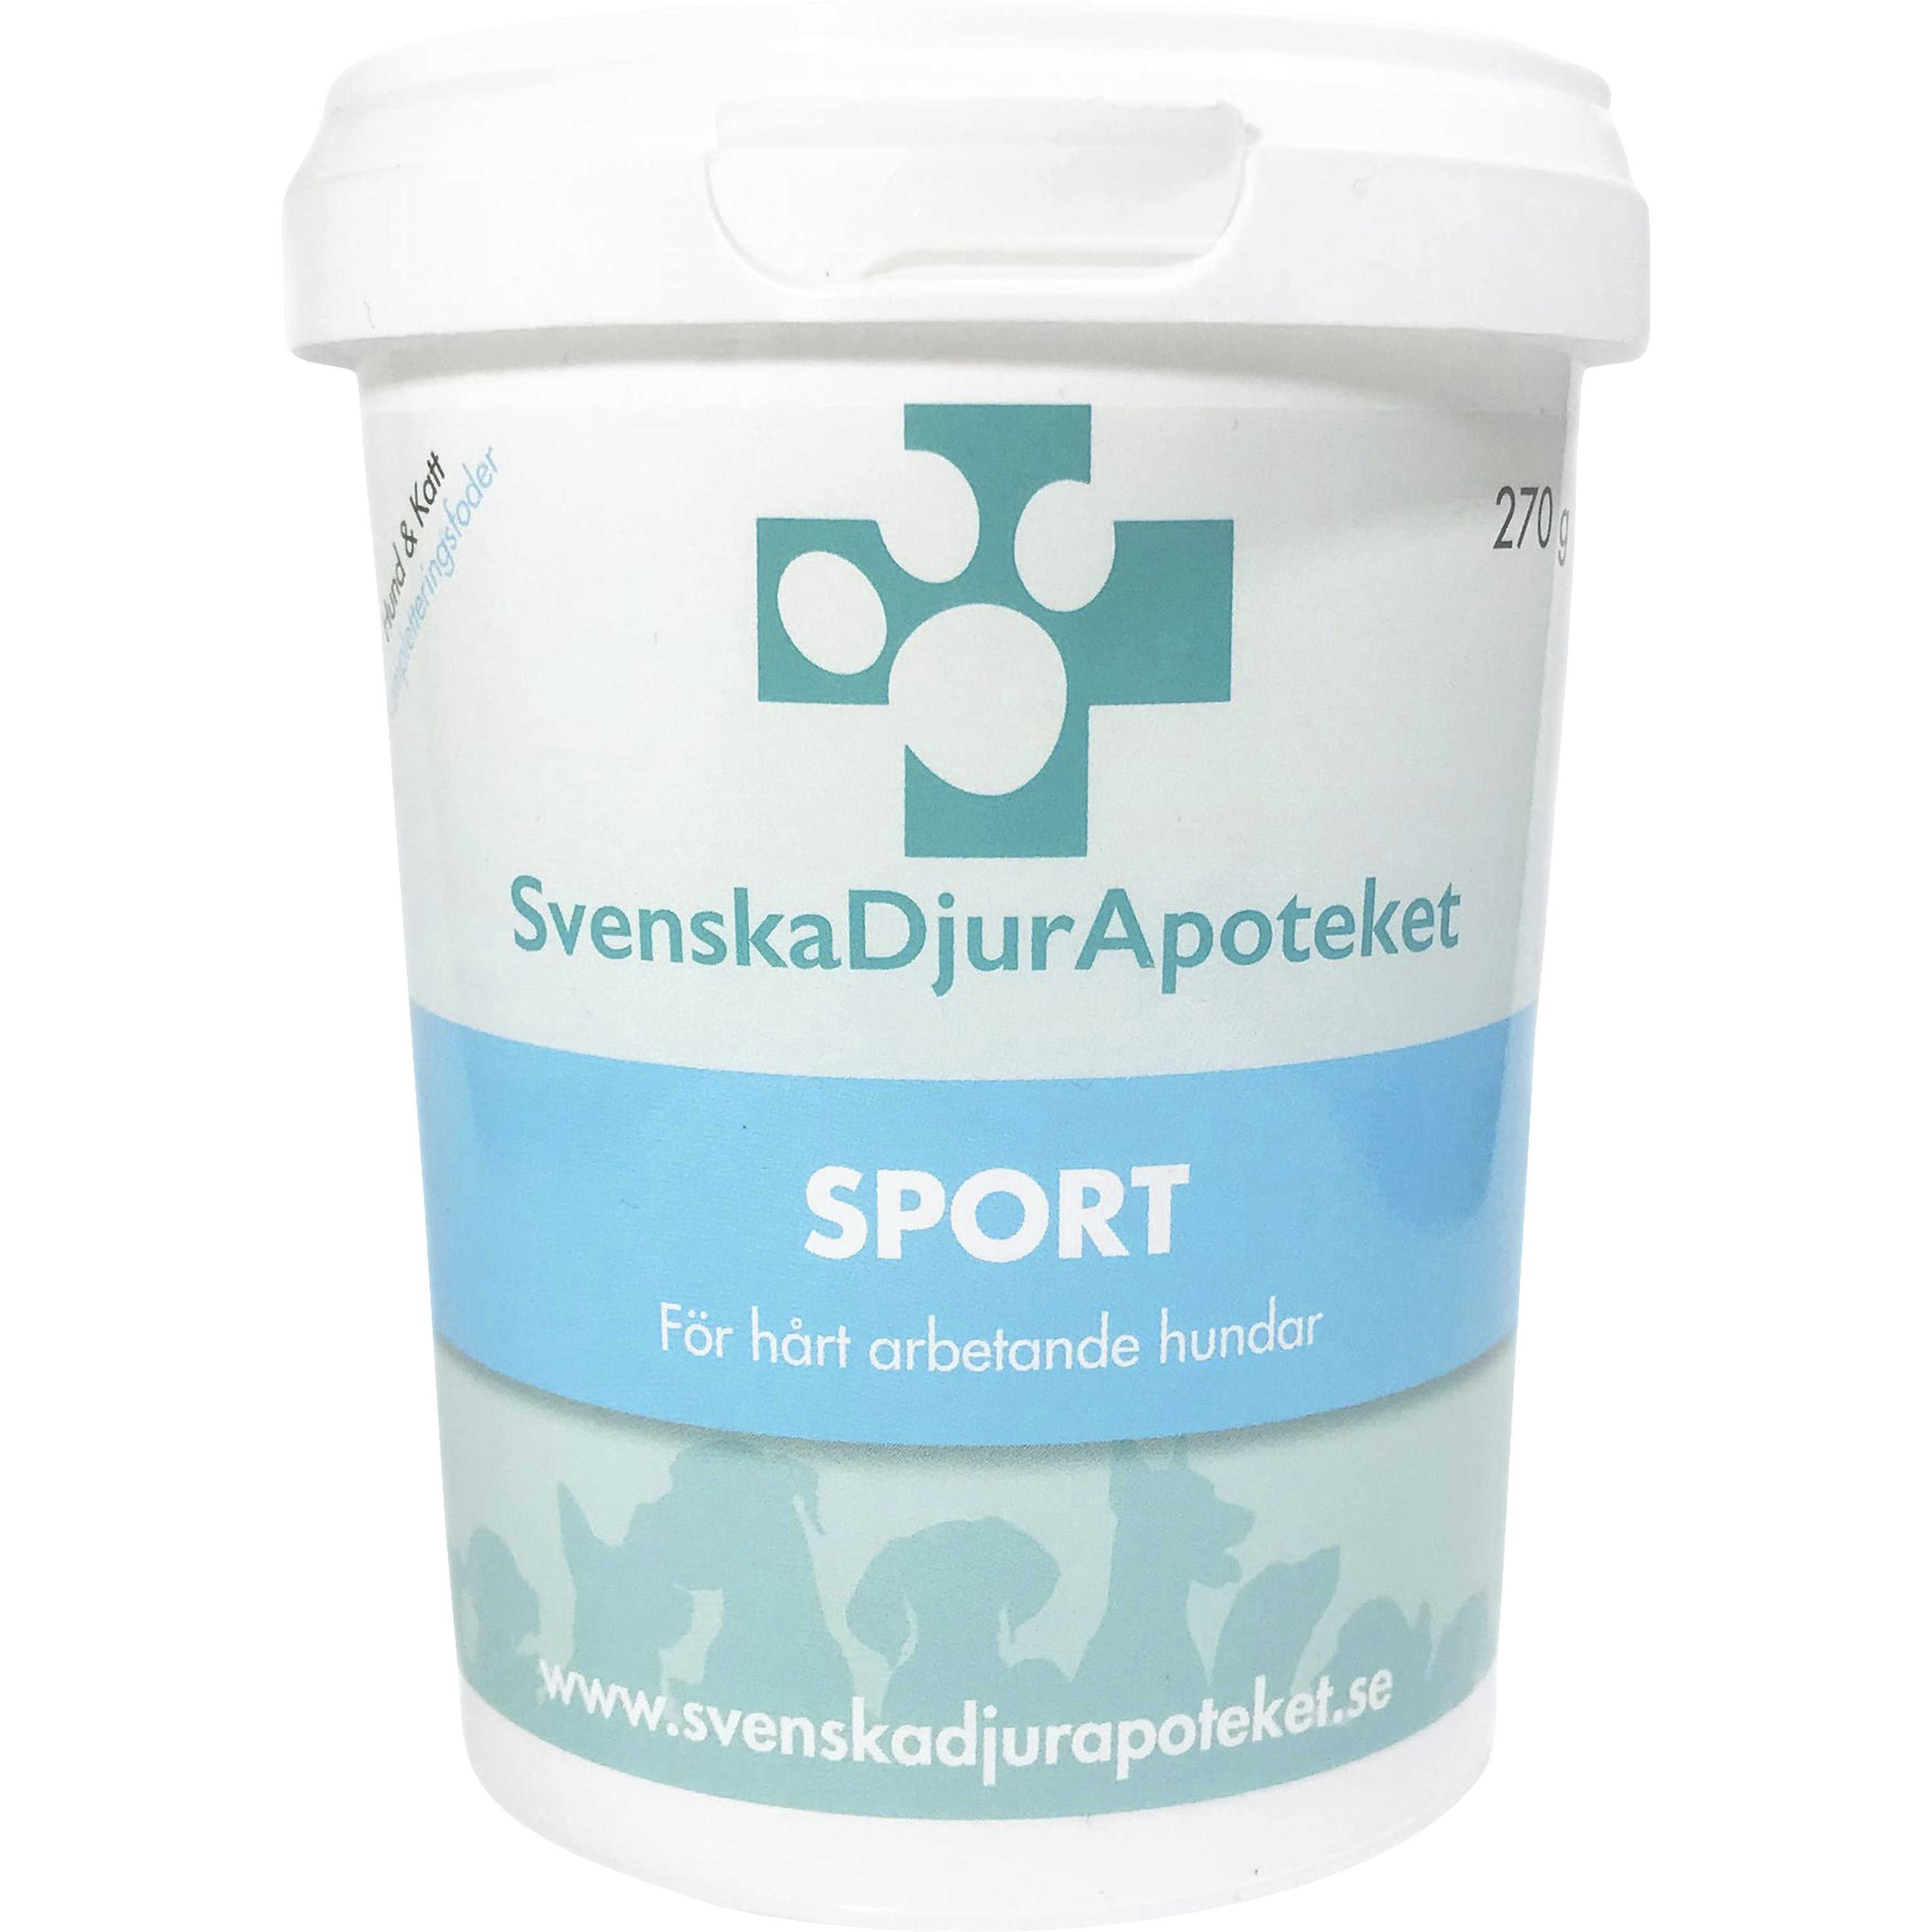 Kosttillskott Svenska DjurApoteket Sport 270g